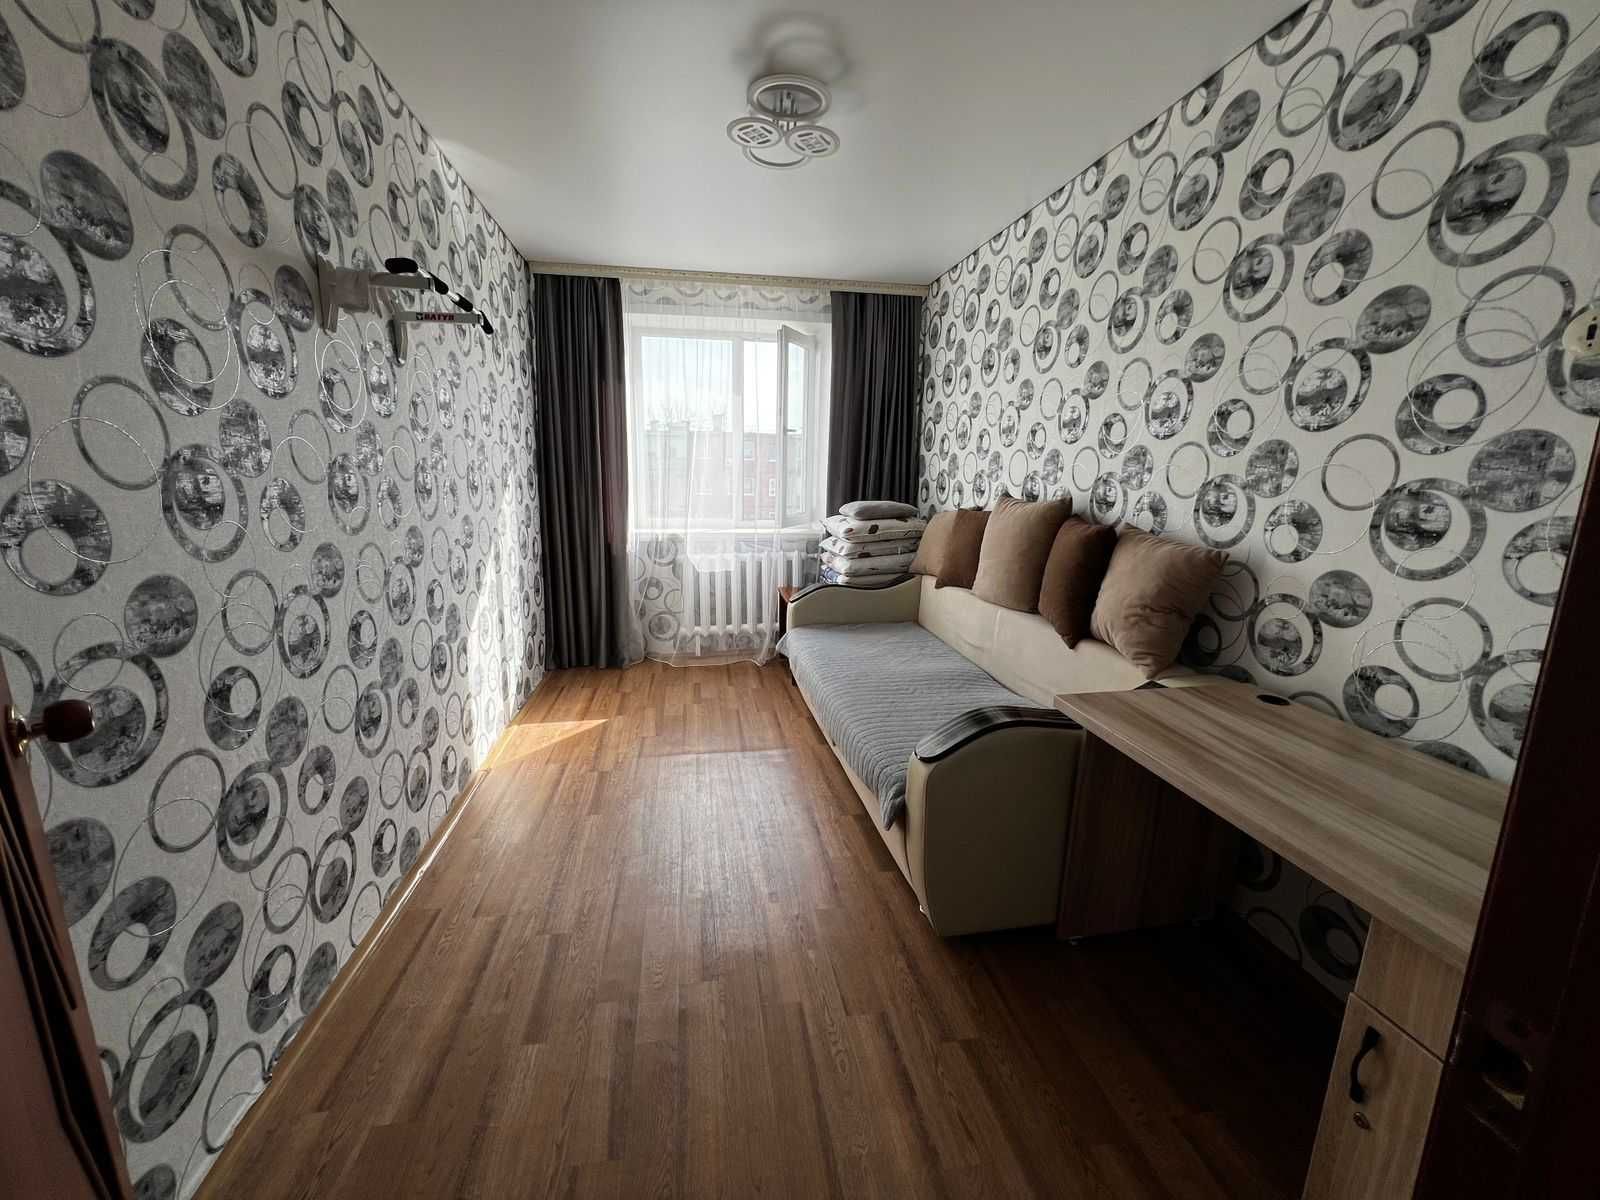 Продам 3х комнатную квартира по улице Карбышева